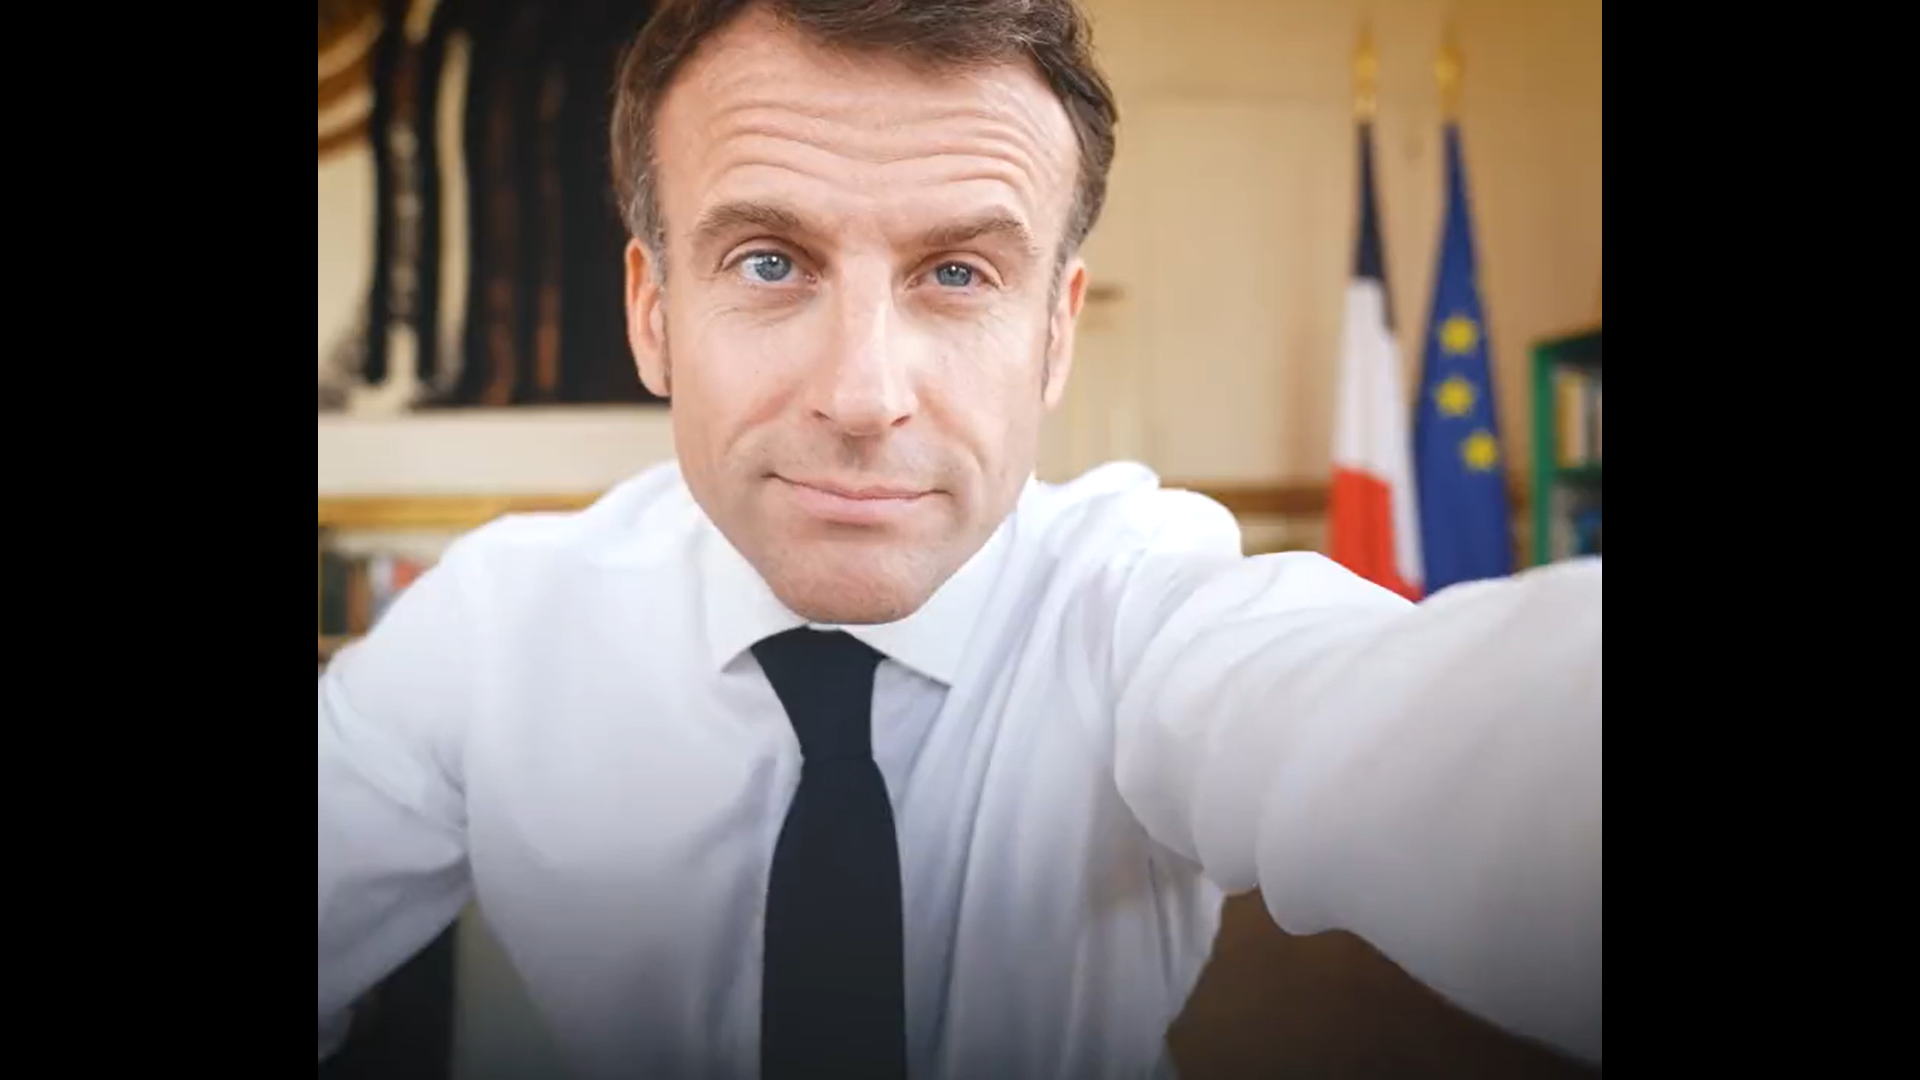 France : Macron a trouvé la potion magique pour gouverner “tranquillement”, ça commence ce 24 novembre